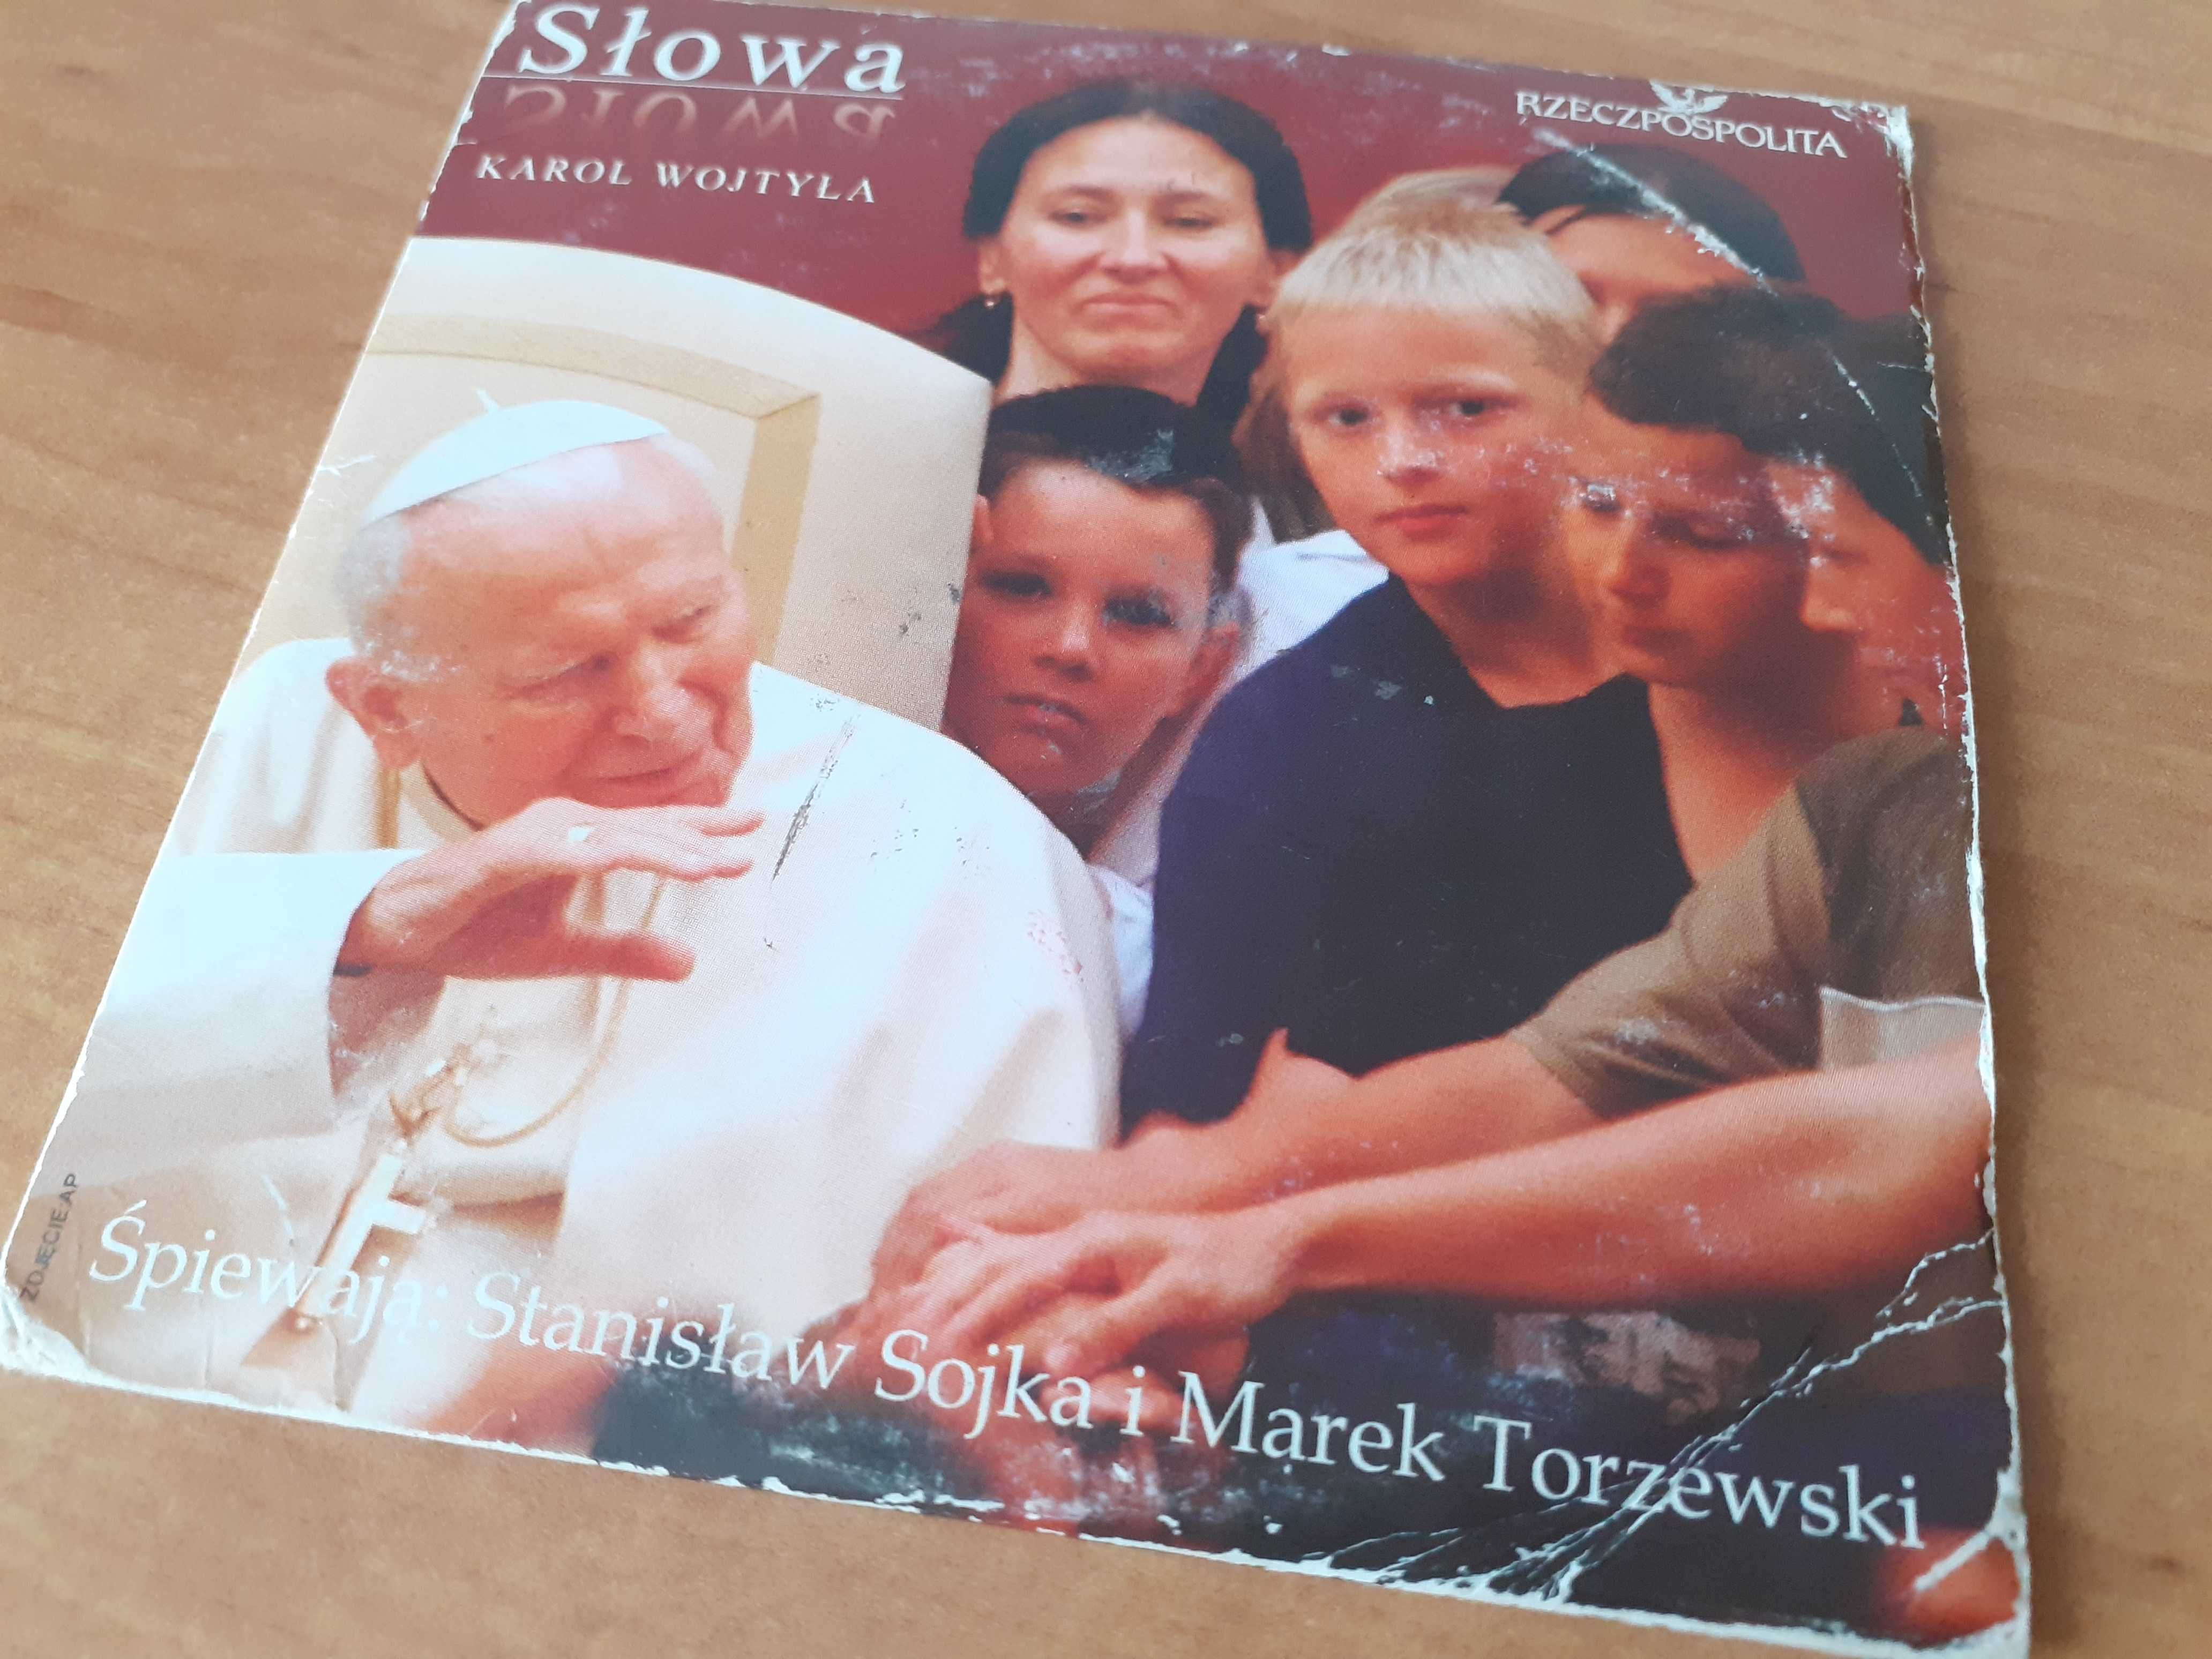 CD Słowa - Karol Wojtyła Stanisław Sojka Marek Torzewski